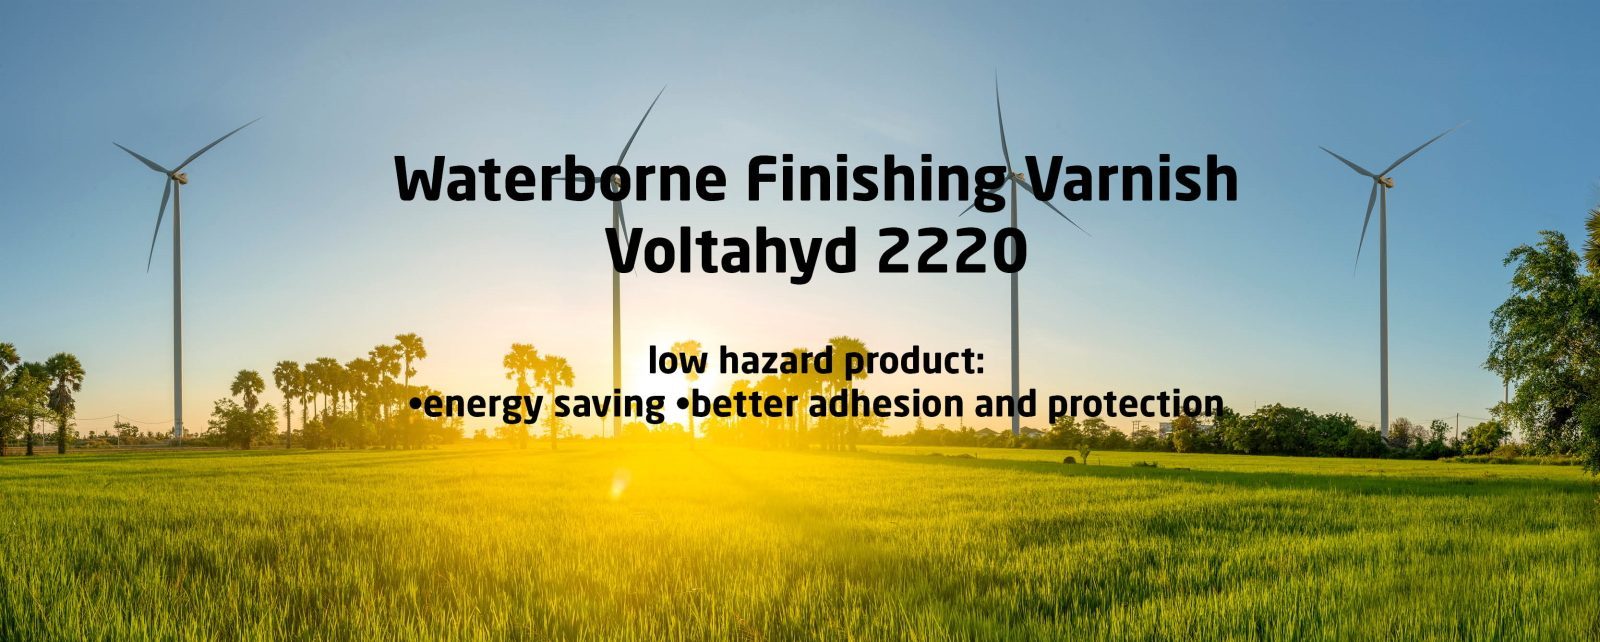 Voltahyd 2220 waterborne finishing varnish